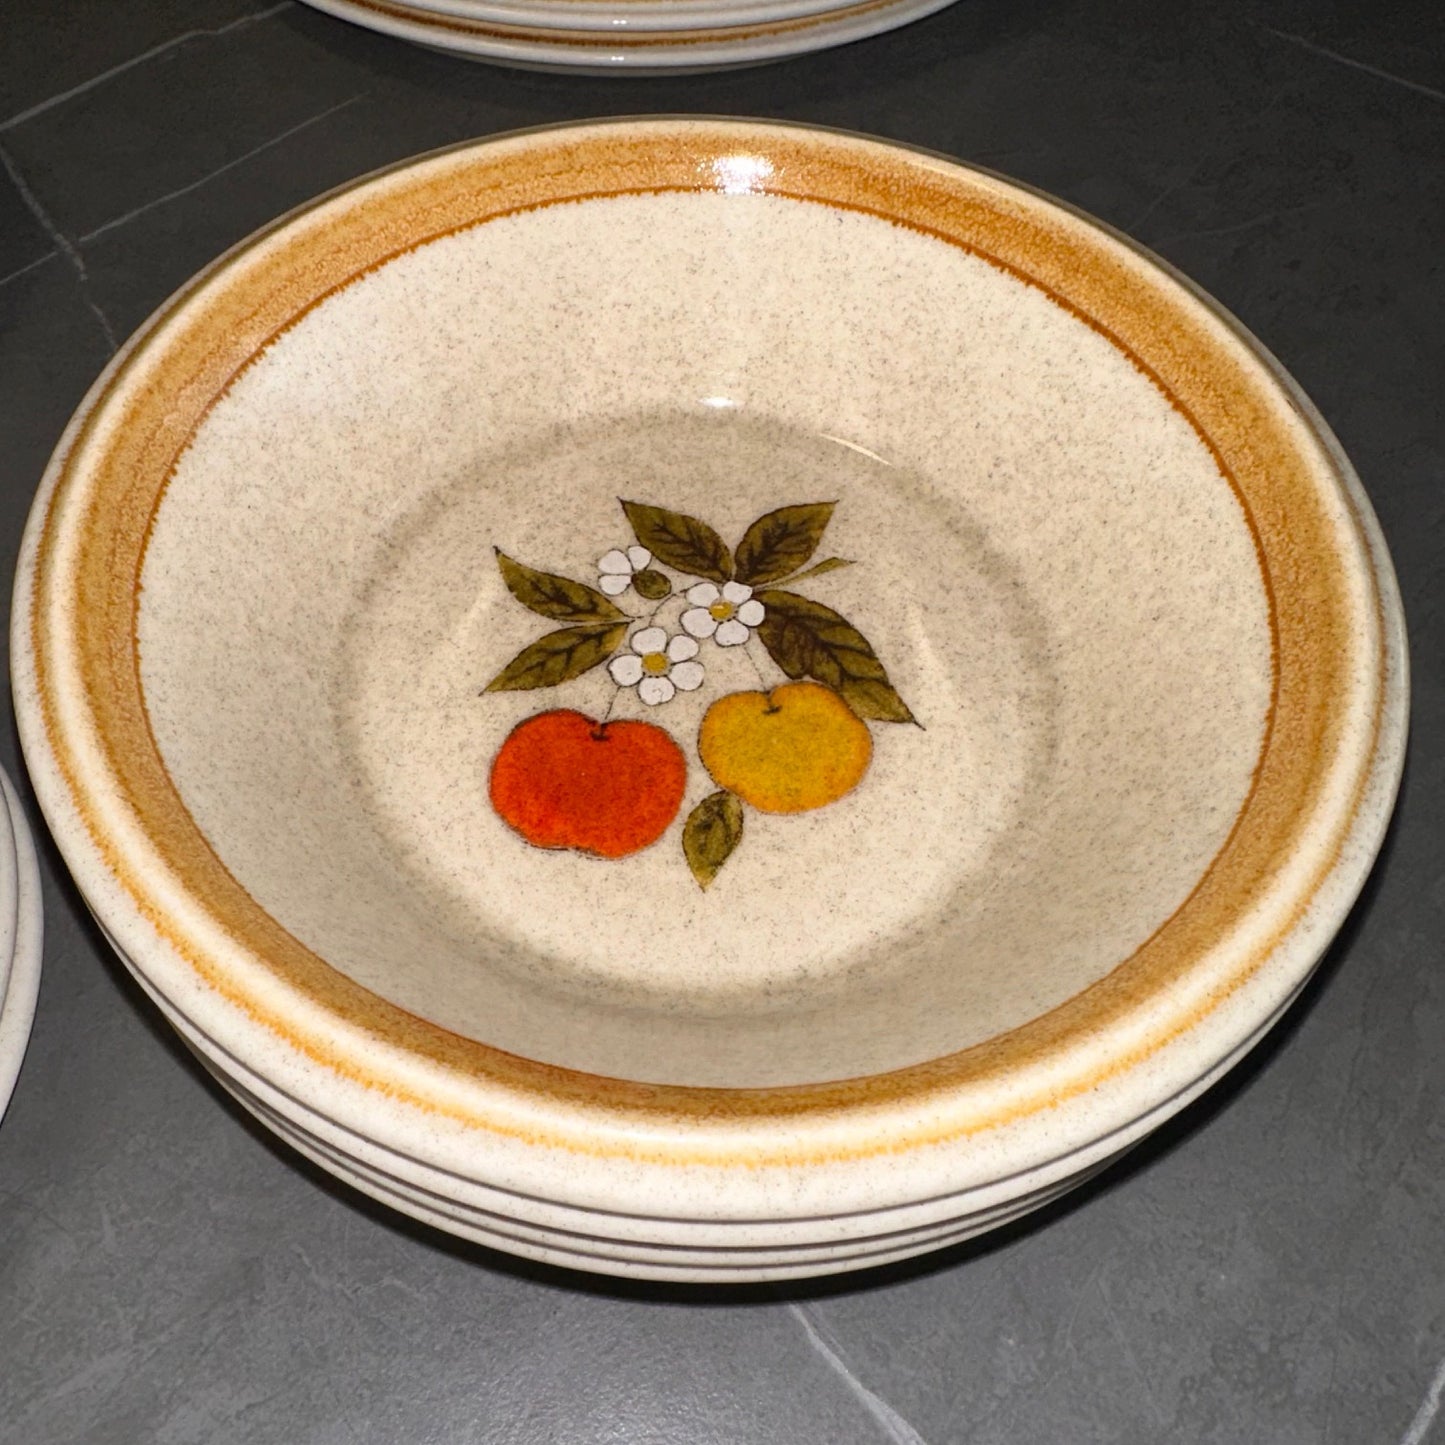 Mikasa "Tempting" 20pcs Dinner Stoneware Set